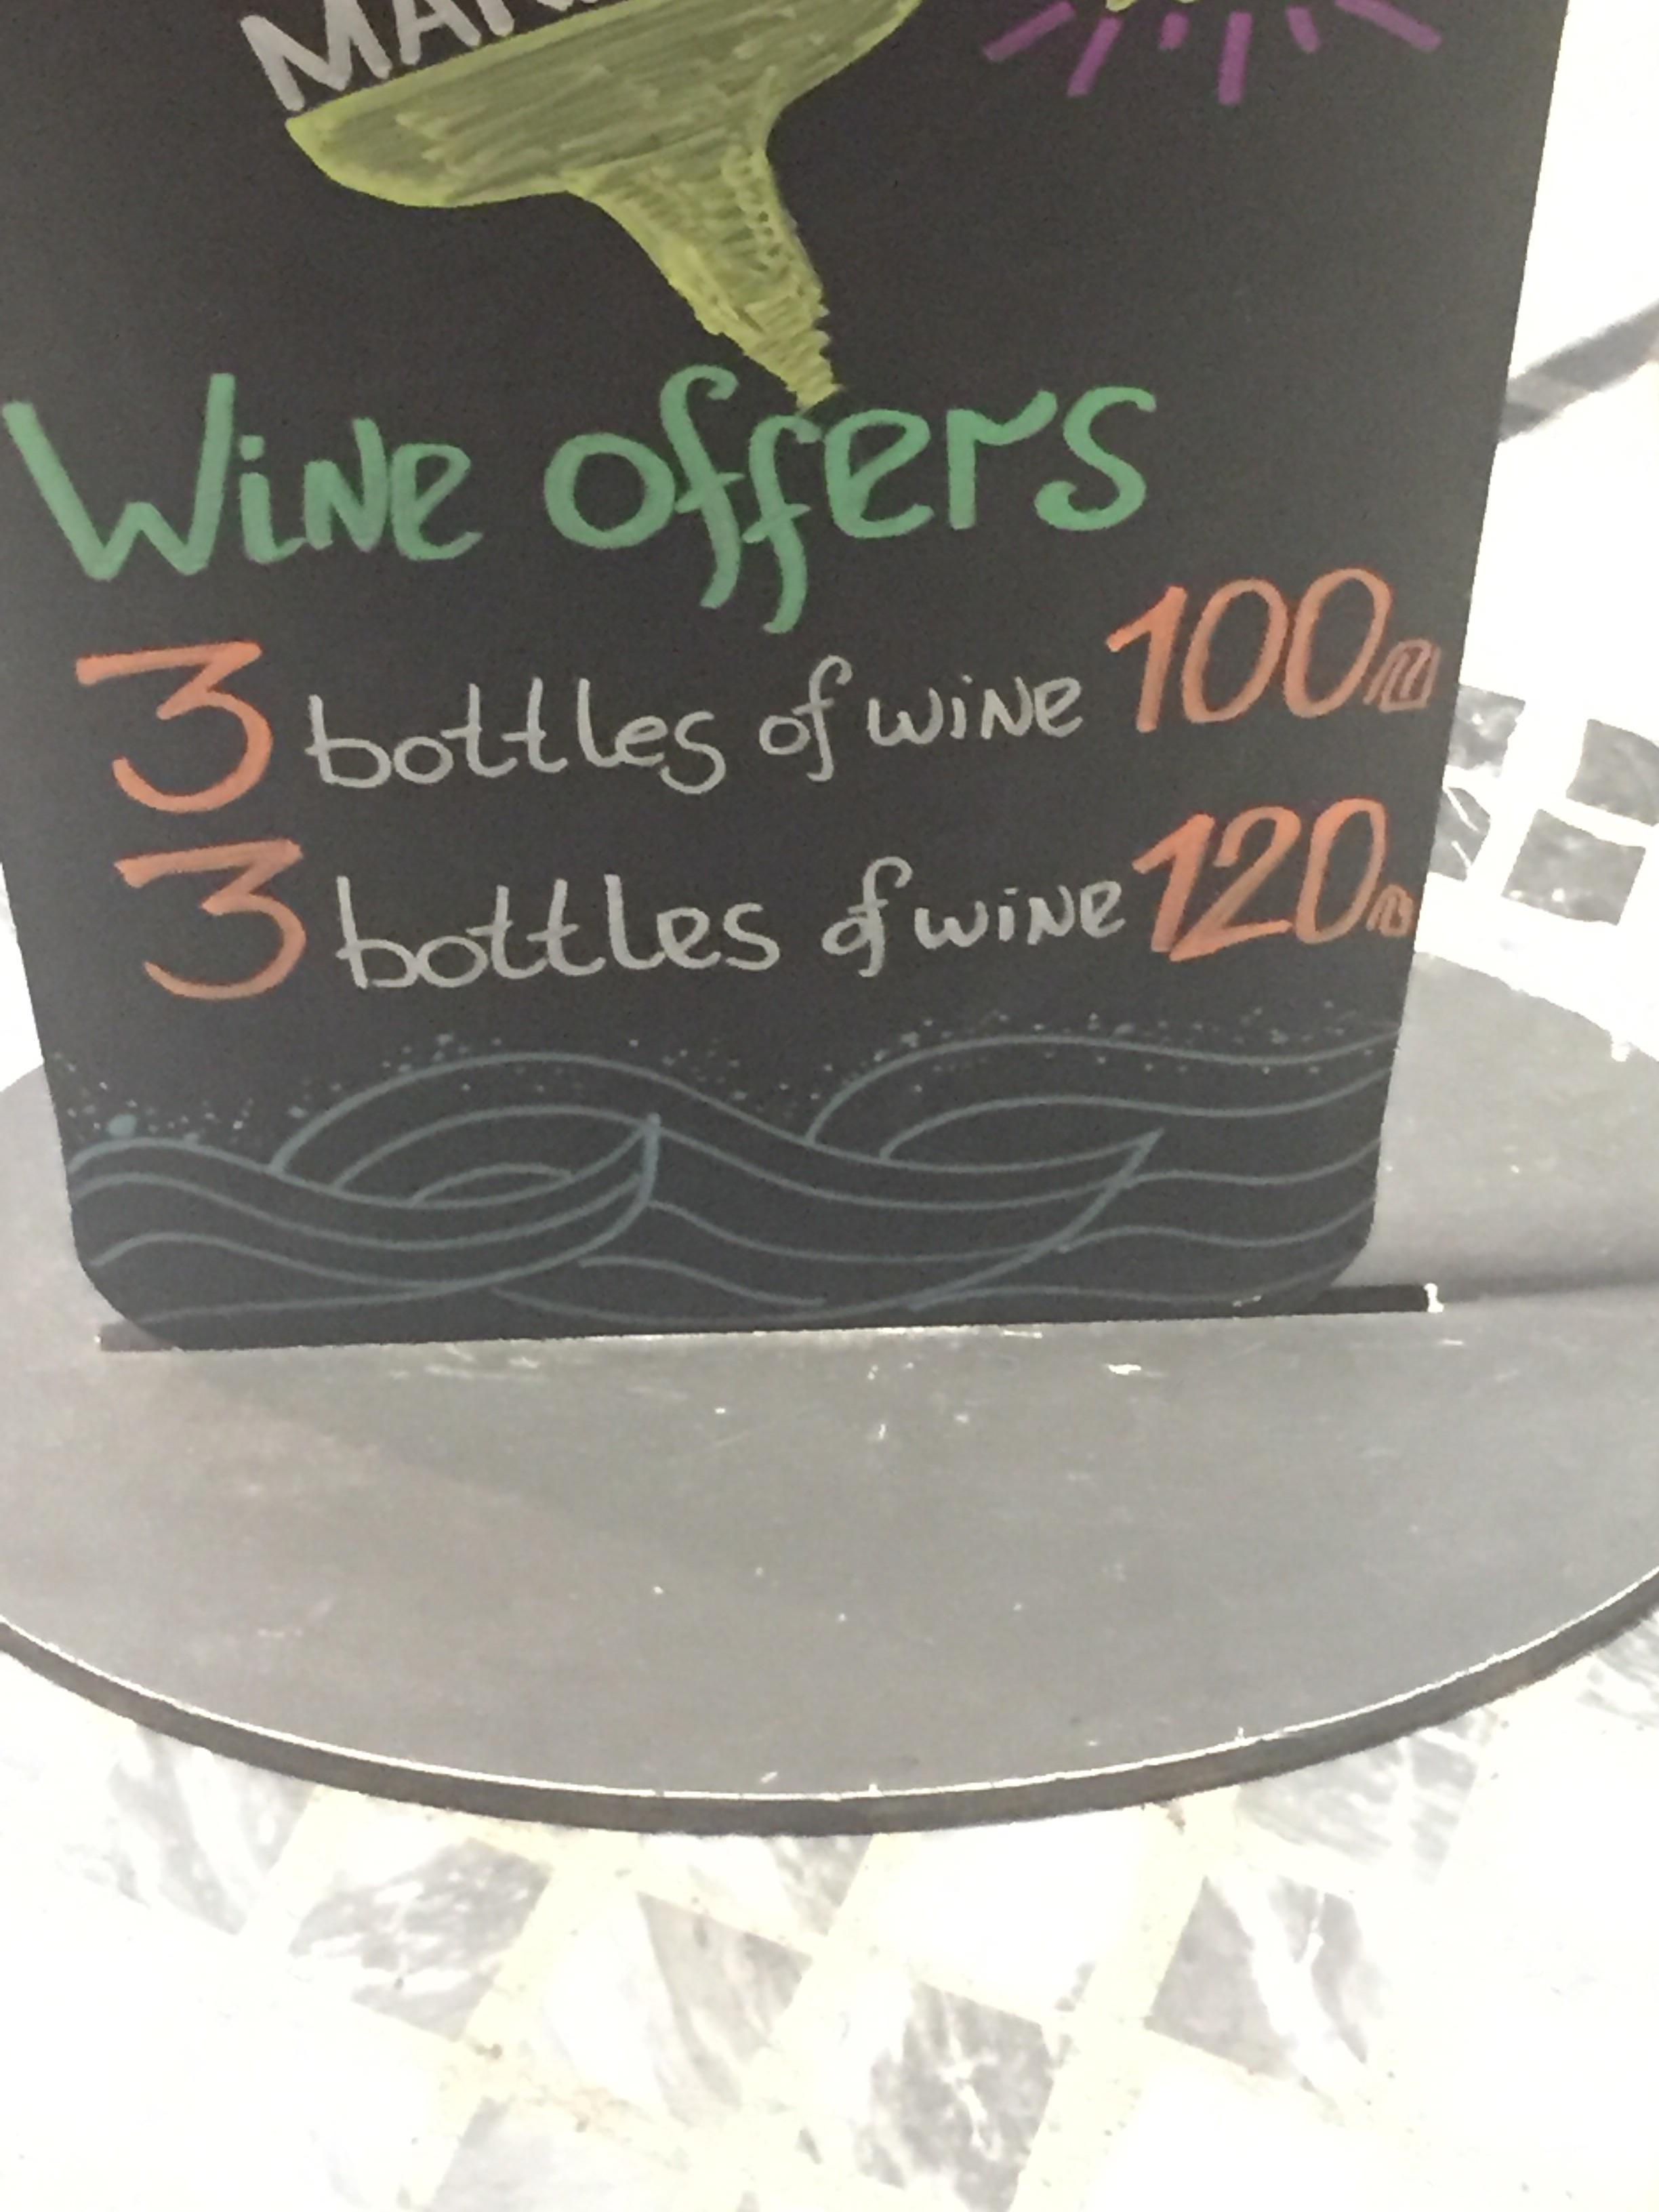 Wine offers 3 bottles of wine 100m 3 bottles of wipe 120.